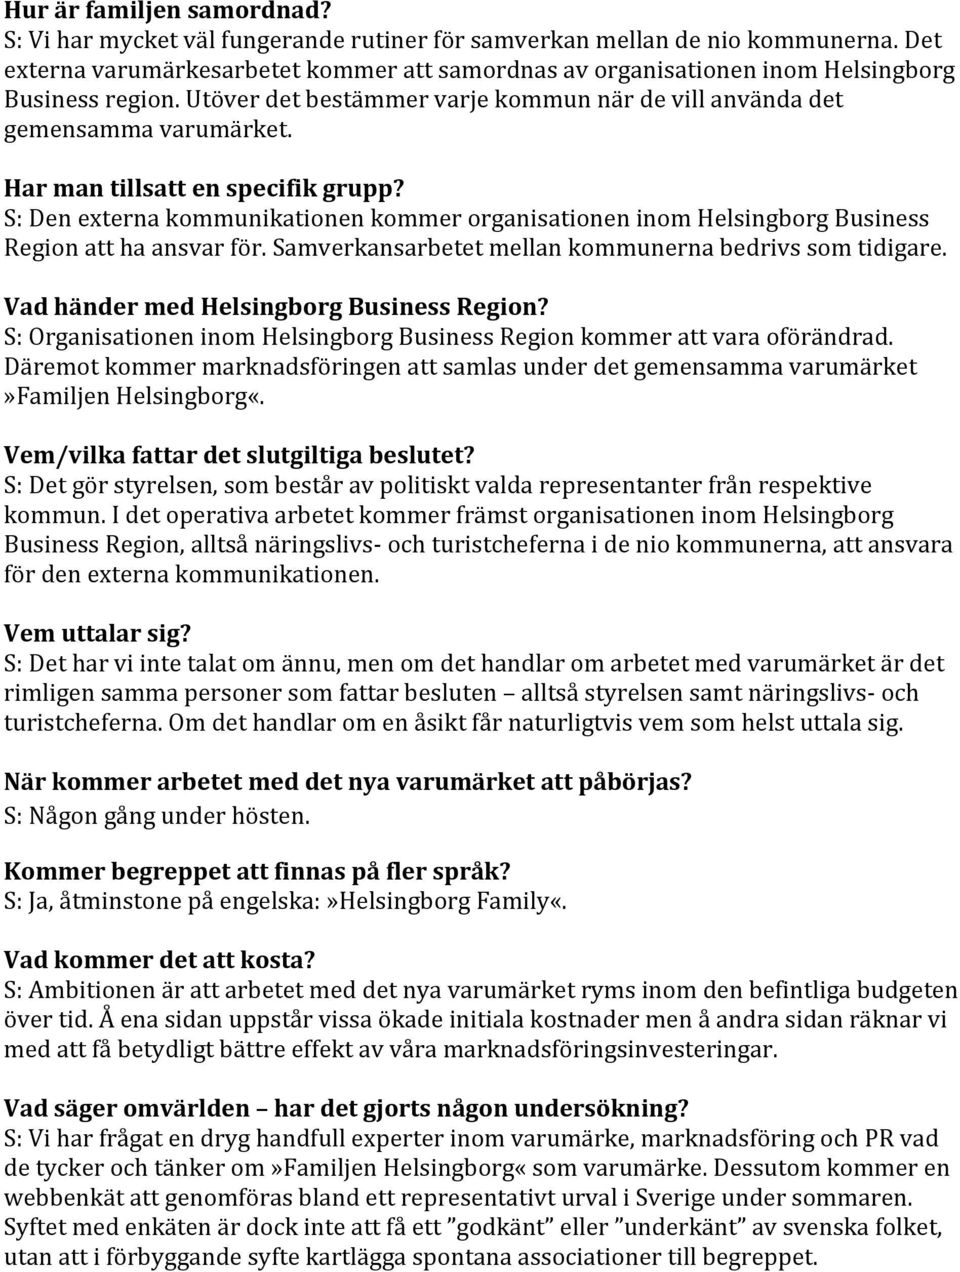 Har man tillsatt en specifik grupp? S: Den externa kommunikationen kommer organisationen inom Helsingborg Business Region att ha ansvar för. Samverkansarbetet mellan kommunerna bedrivs som tidigare.